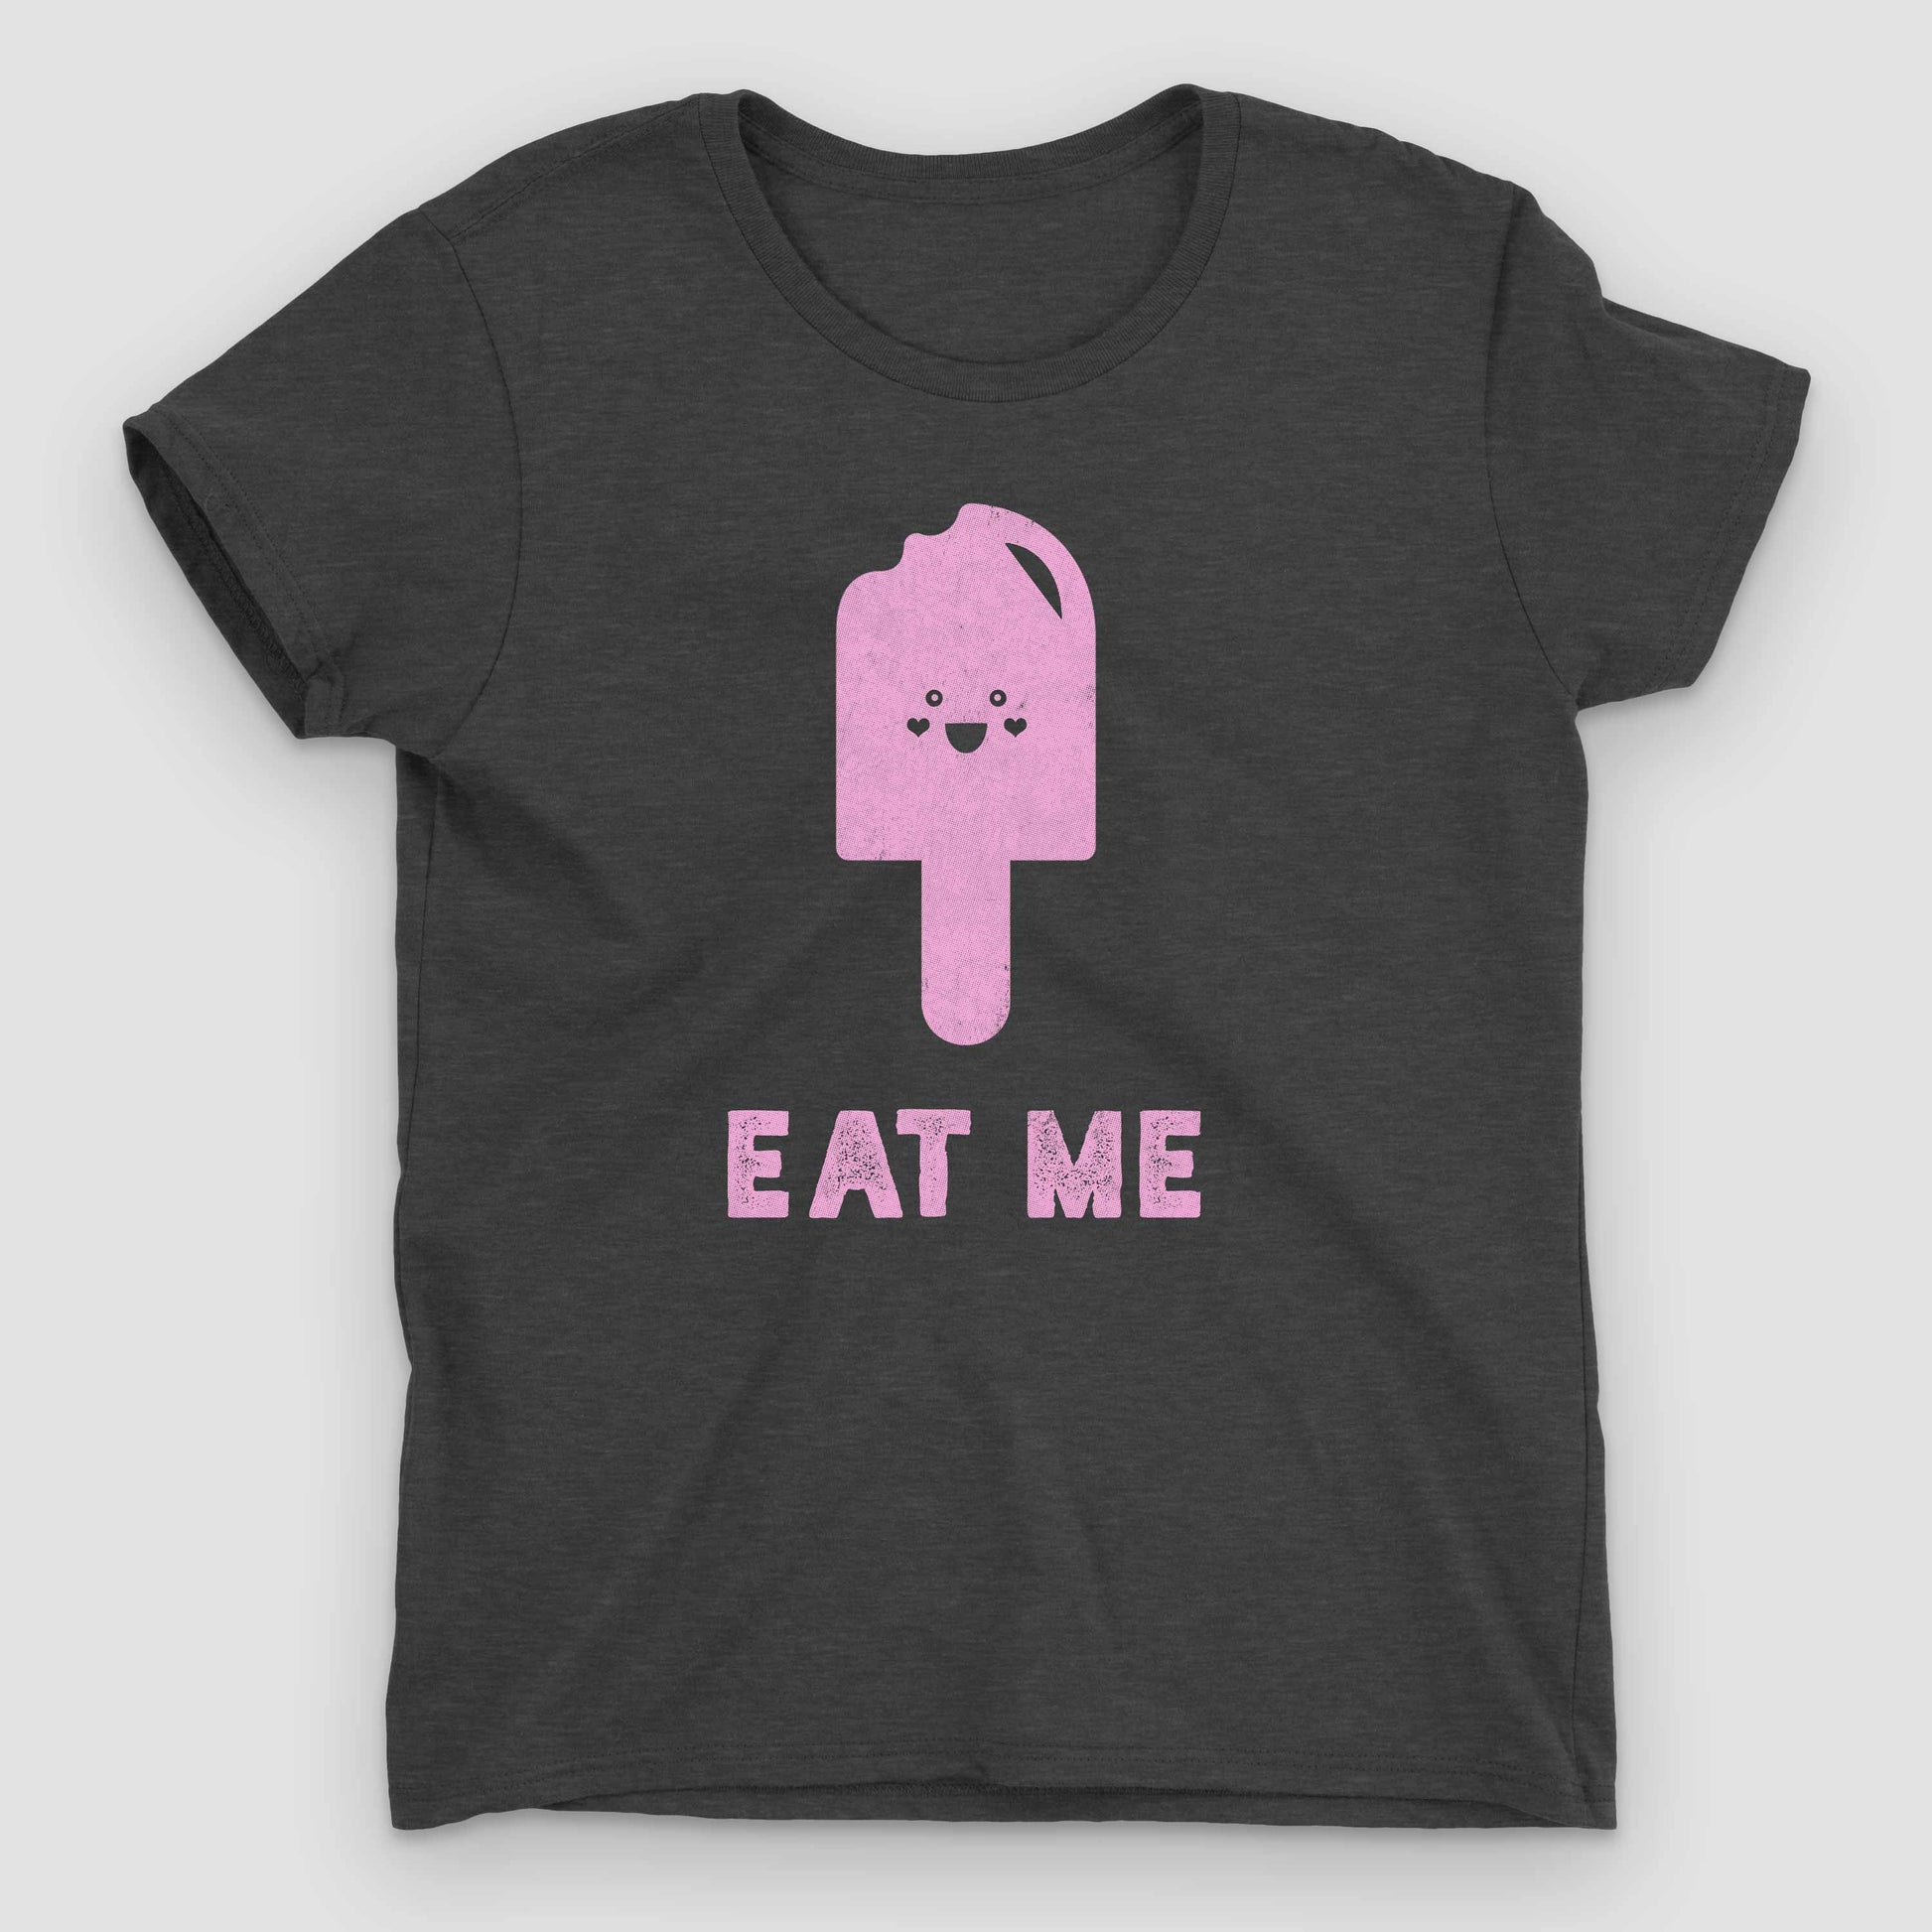 Heather Dark Grey Eat Me Women's Graphic T-Shirt by Snaxtime